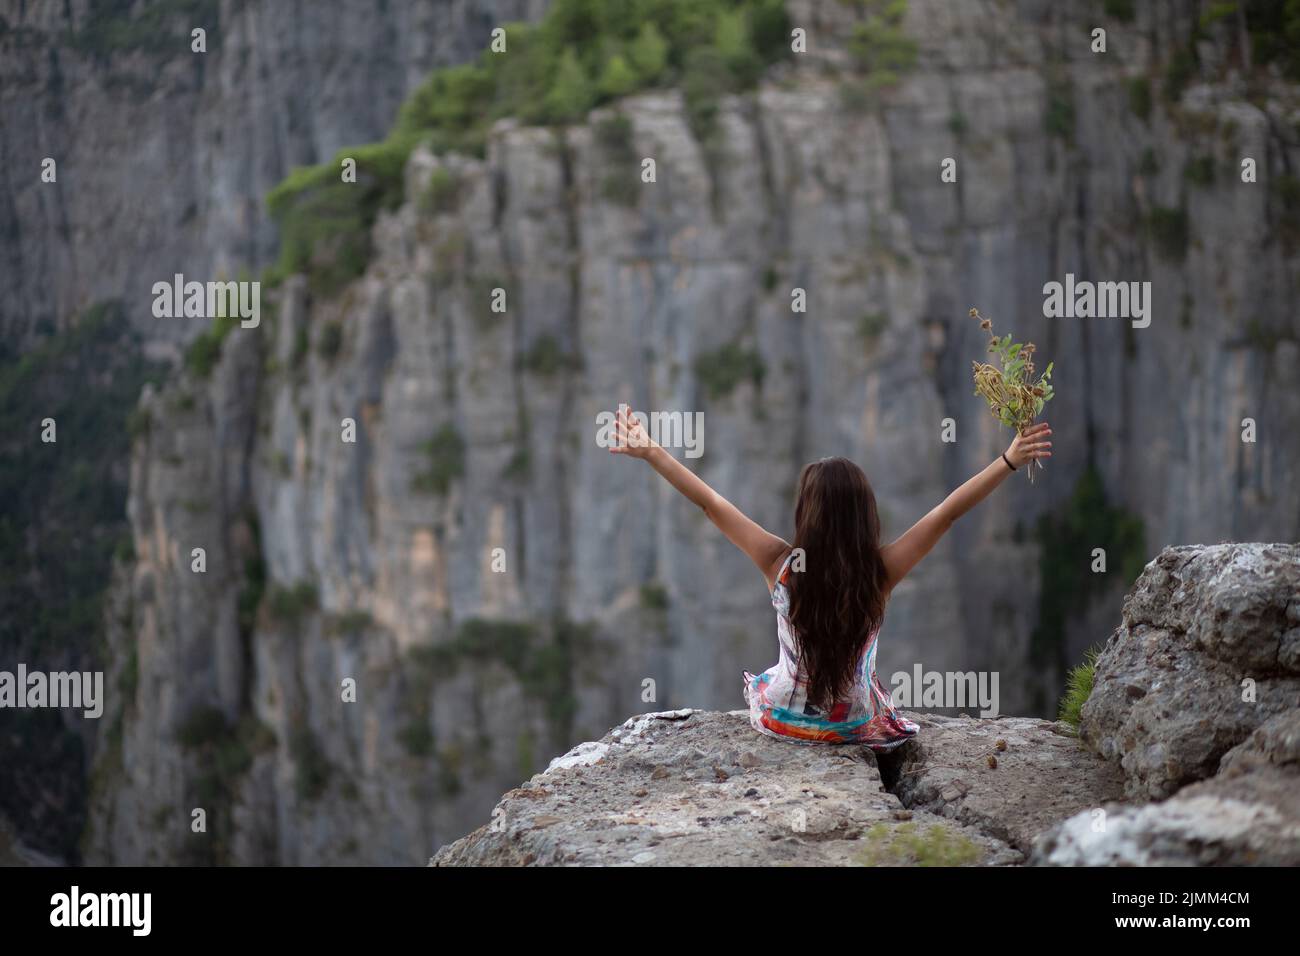 La giovane ragazza con i fiori in mano, che ha fatto un segno di vittoria mentre guardava la vista del canyon. Foto Stock